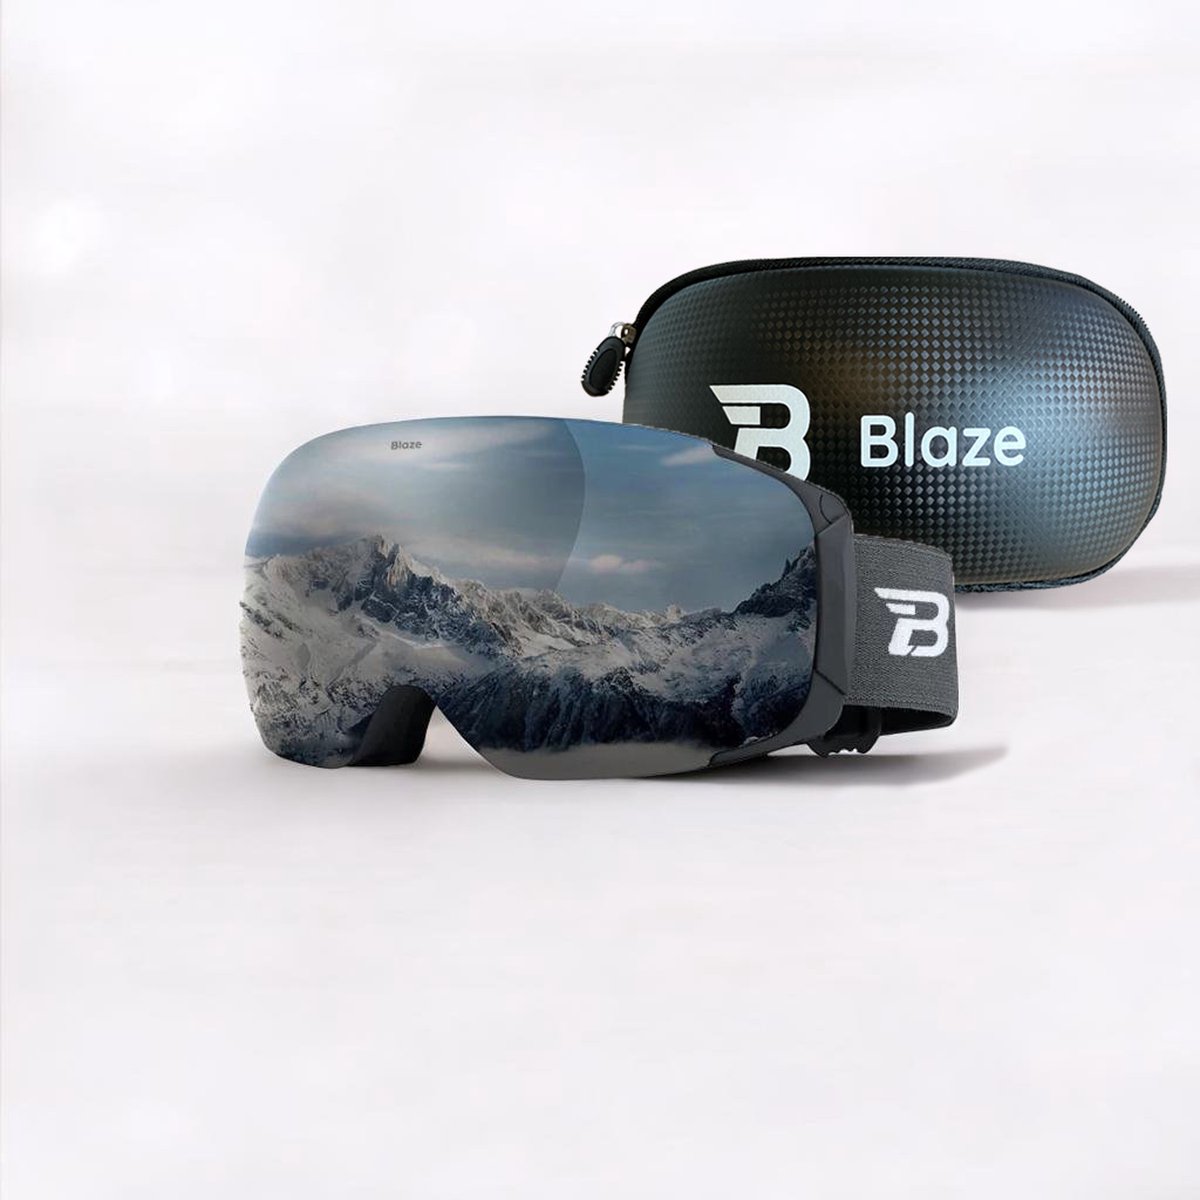 Blaze skibril Icy Peak zilver - categorie 3 - dames heren